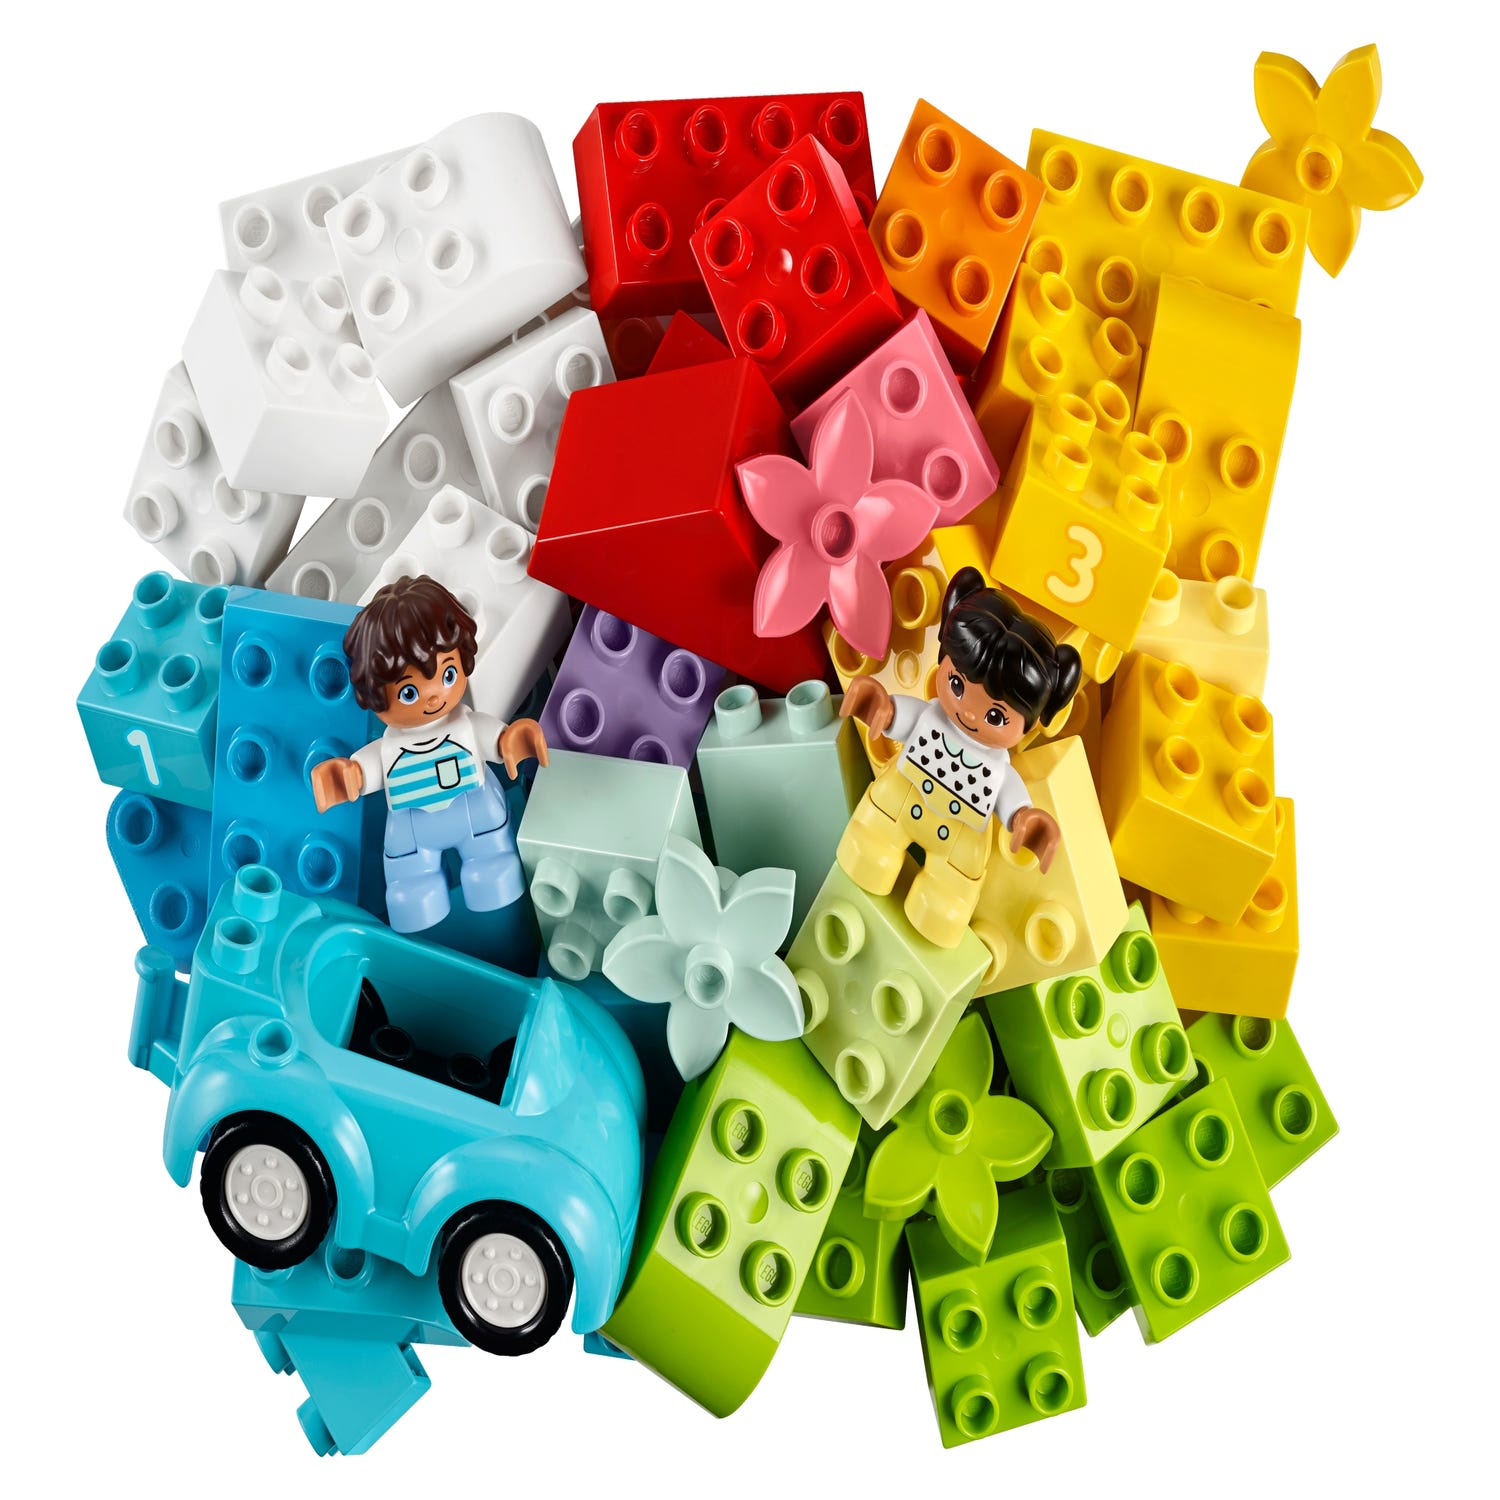 Lot 10913 La boîte de briques LEGO DUPLO et 1 Sachet 30332 Ma